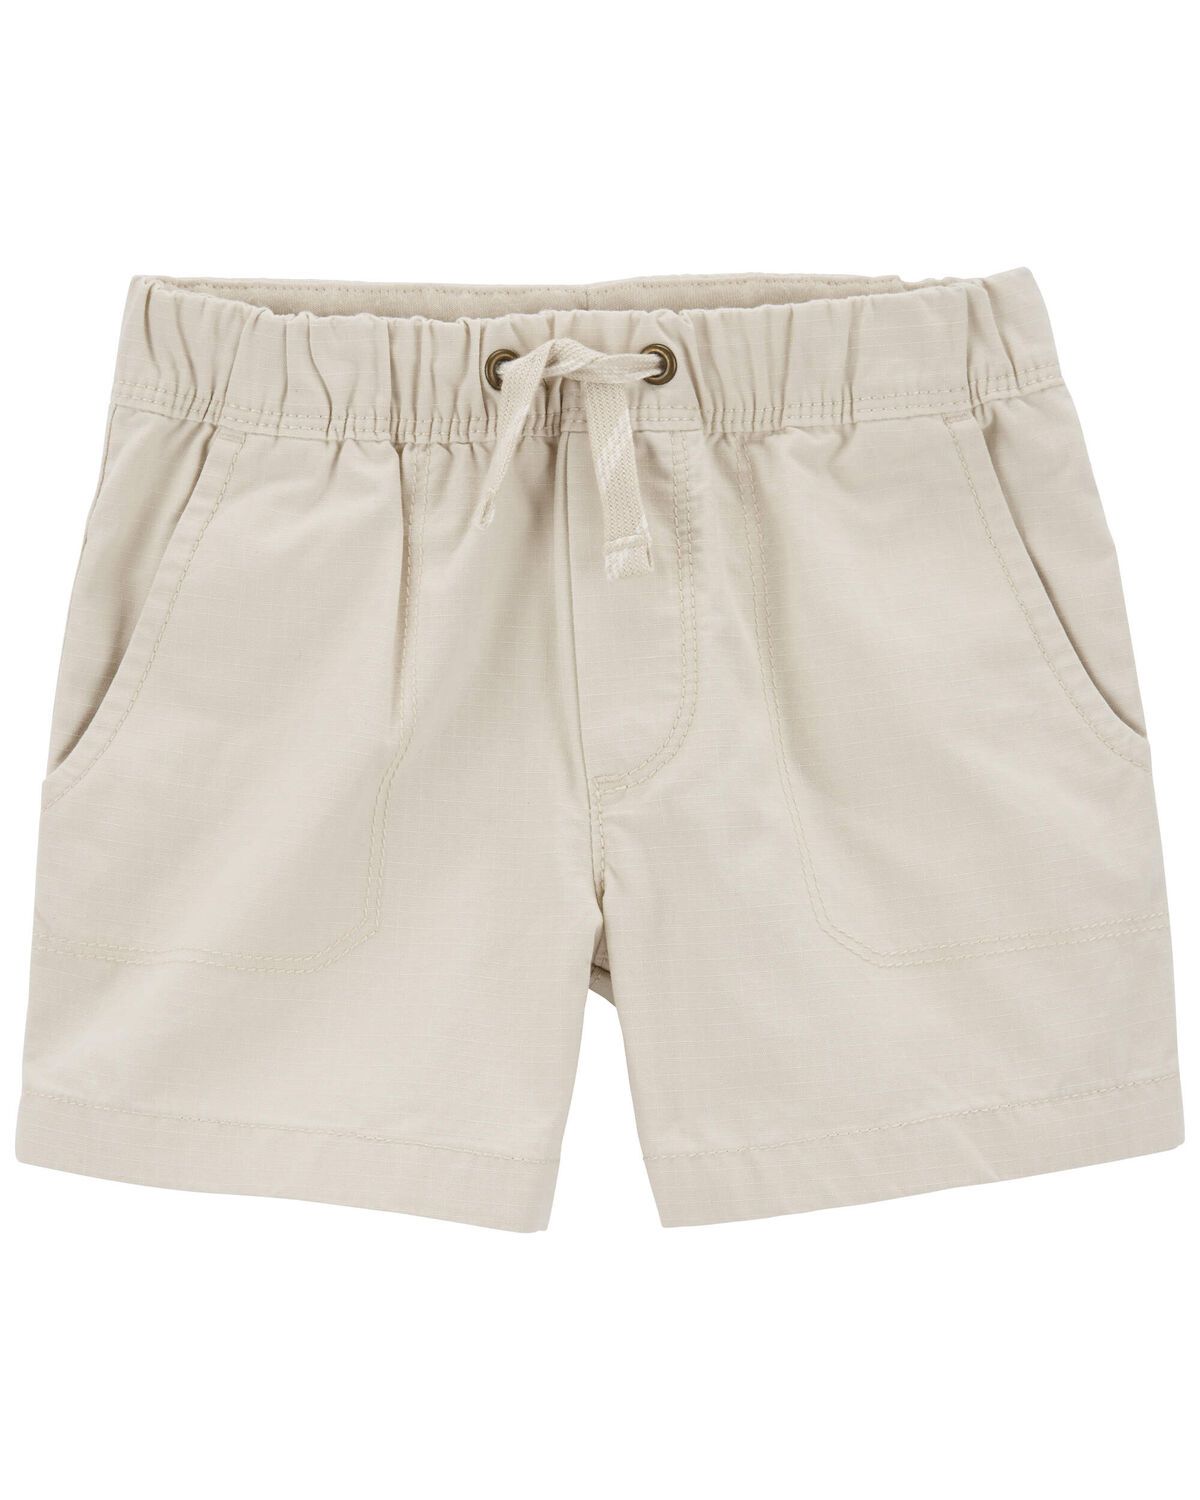 Toddler Pull-On Terrain Shorts | Carter's